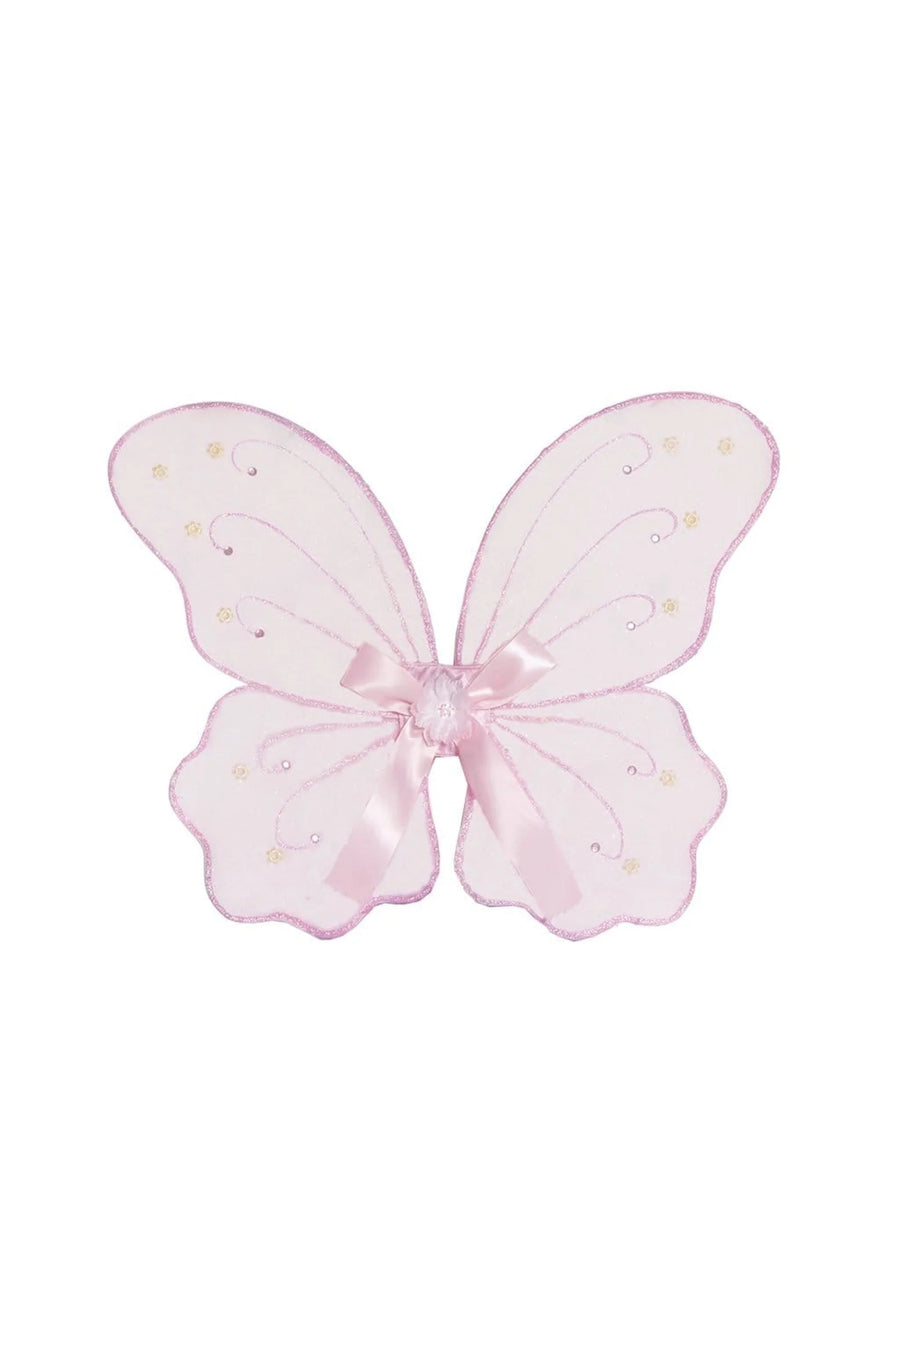 Great Pretenders Pink Fairy Wings |Mockingbird Baby & Kids